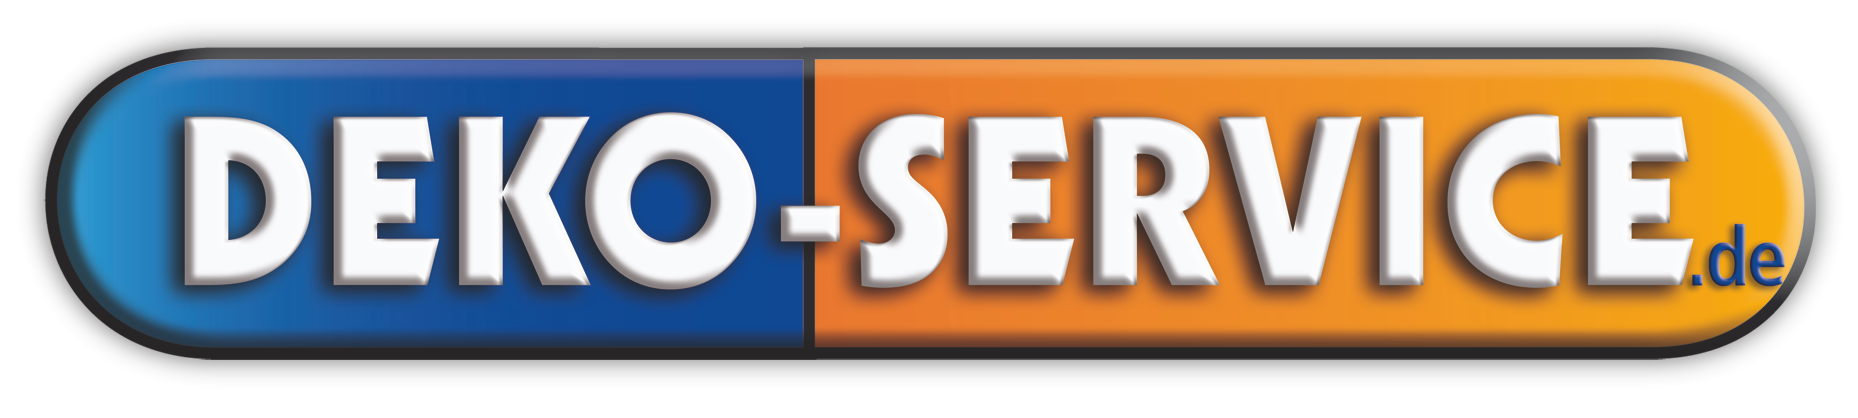 Deko-Service